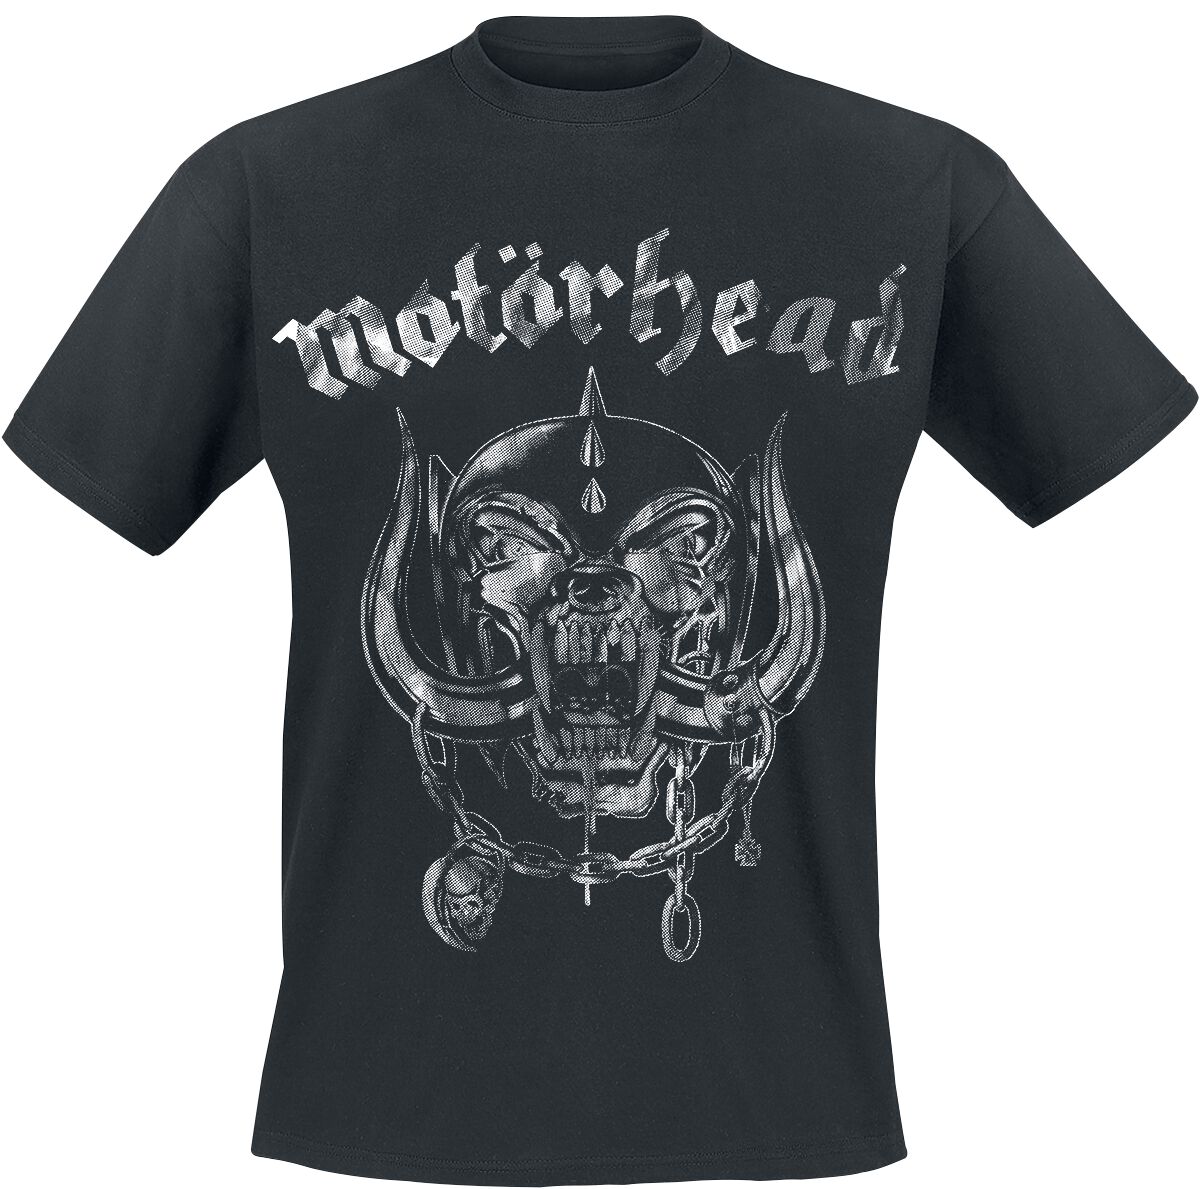 Motörhead T-Shirt - Large Warpig Logo - S bis 4XL - für Männer - Größe L - schwarz  - Lizenziertes Merchandise!